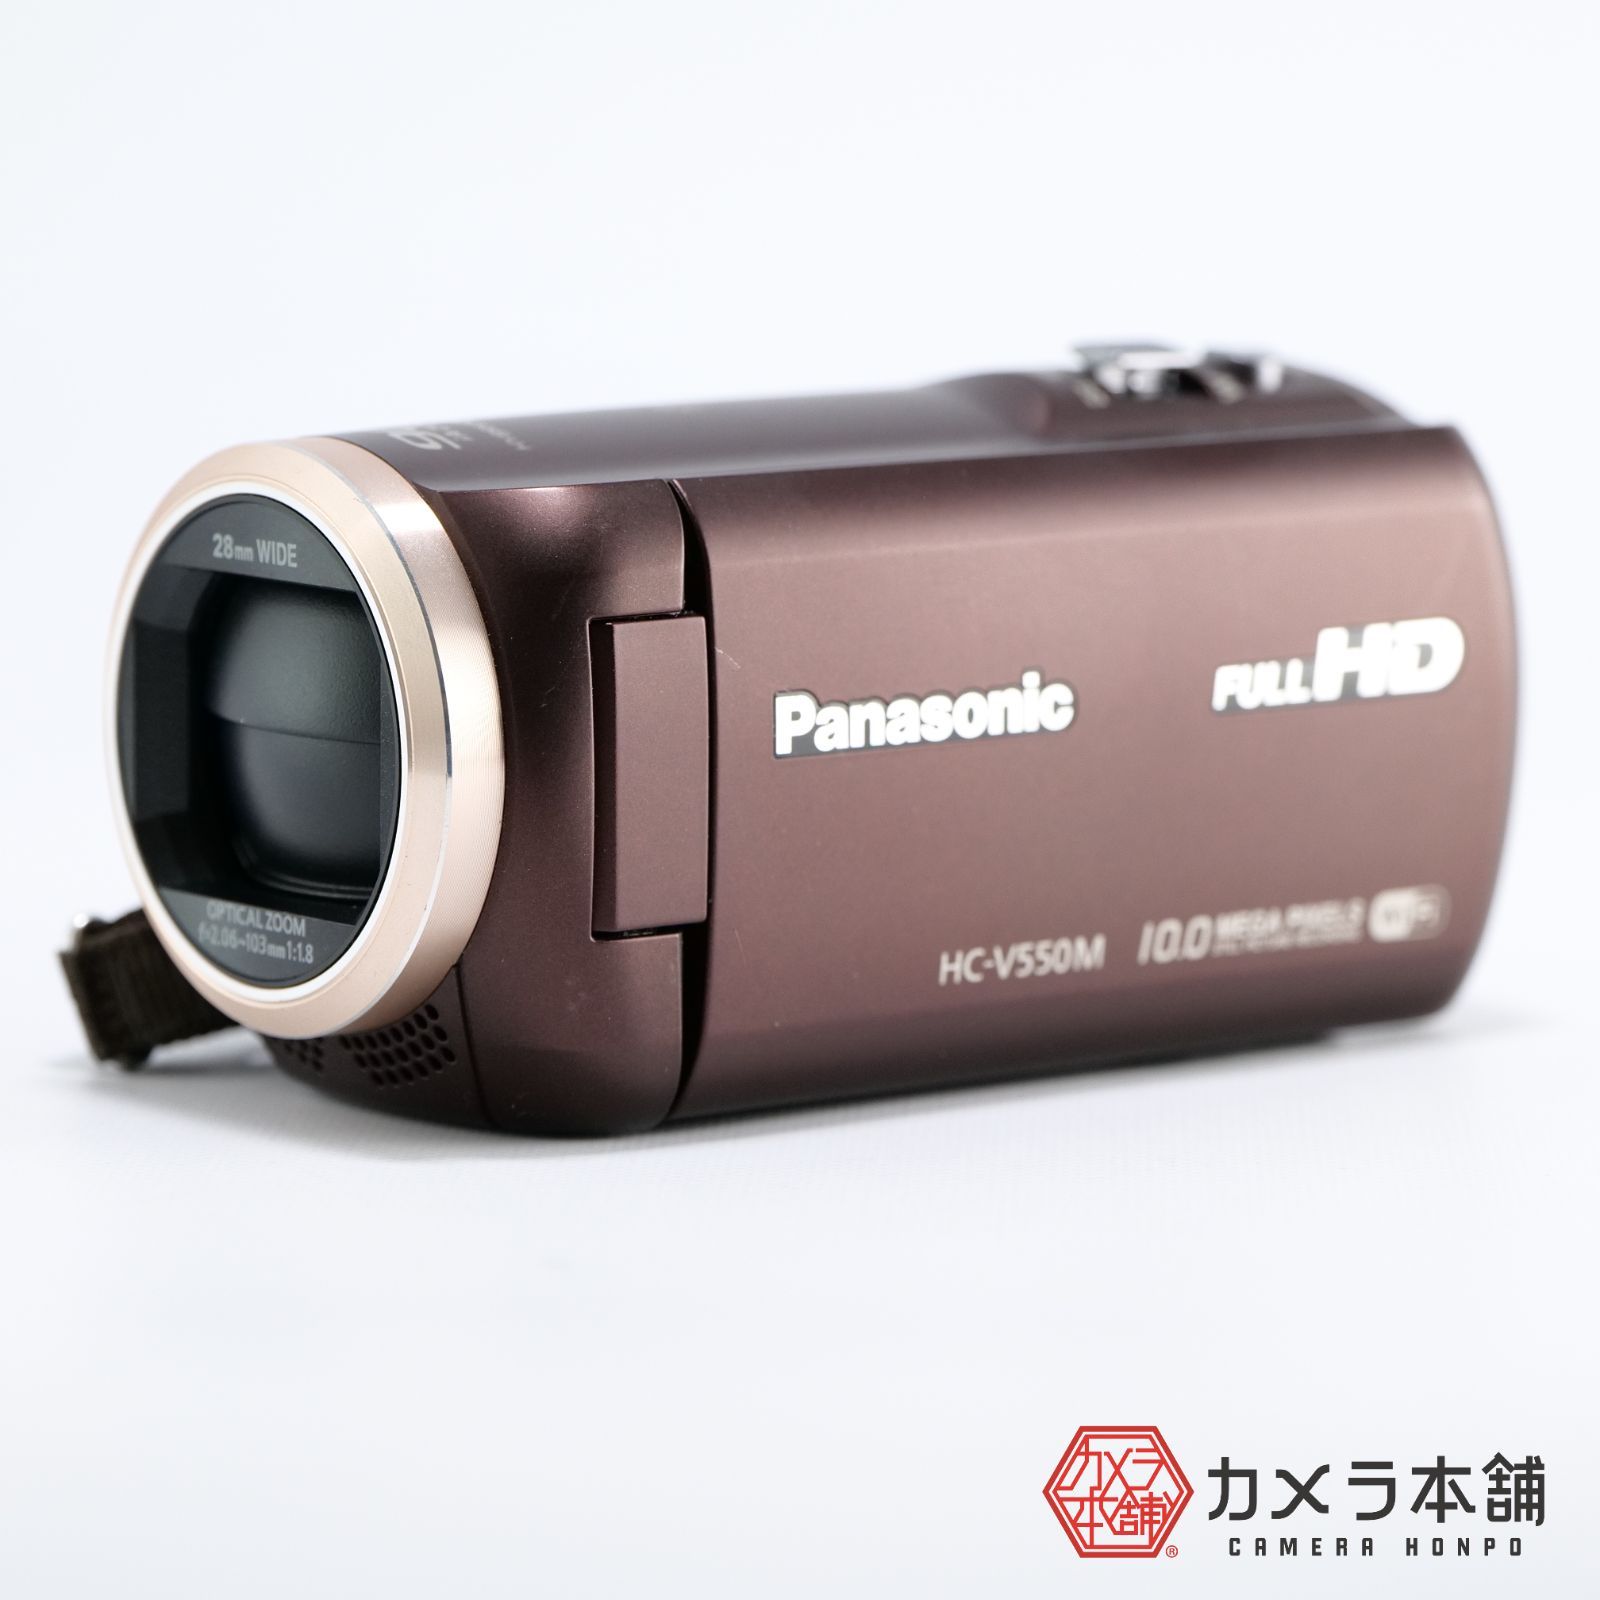 パナソニックパナソニックビデオカメラ HC-V550M Panasonic - ビデオカメラ